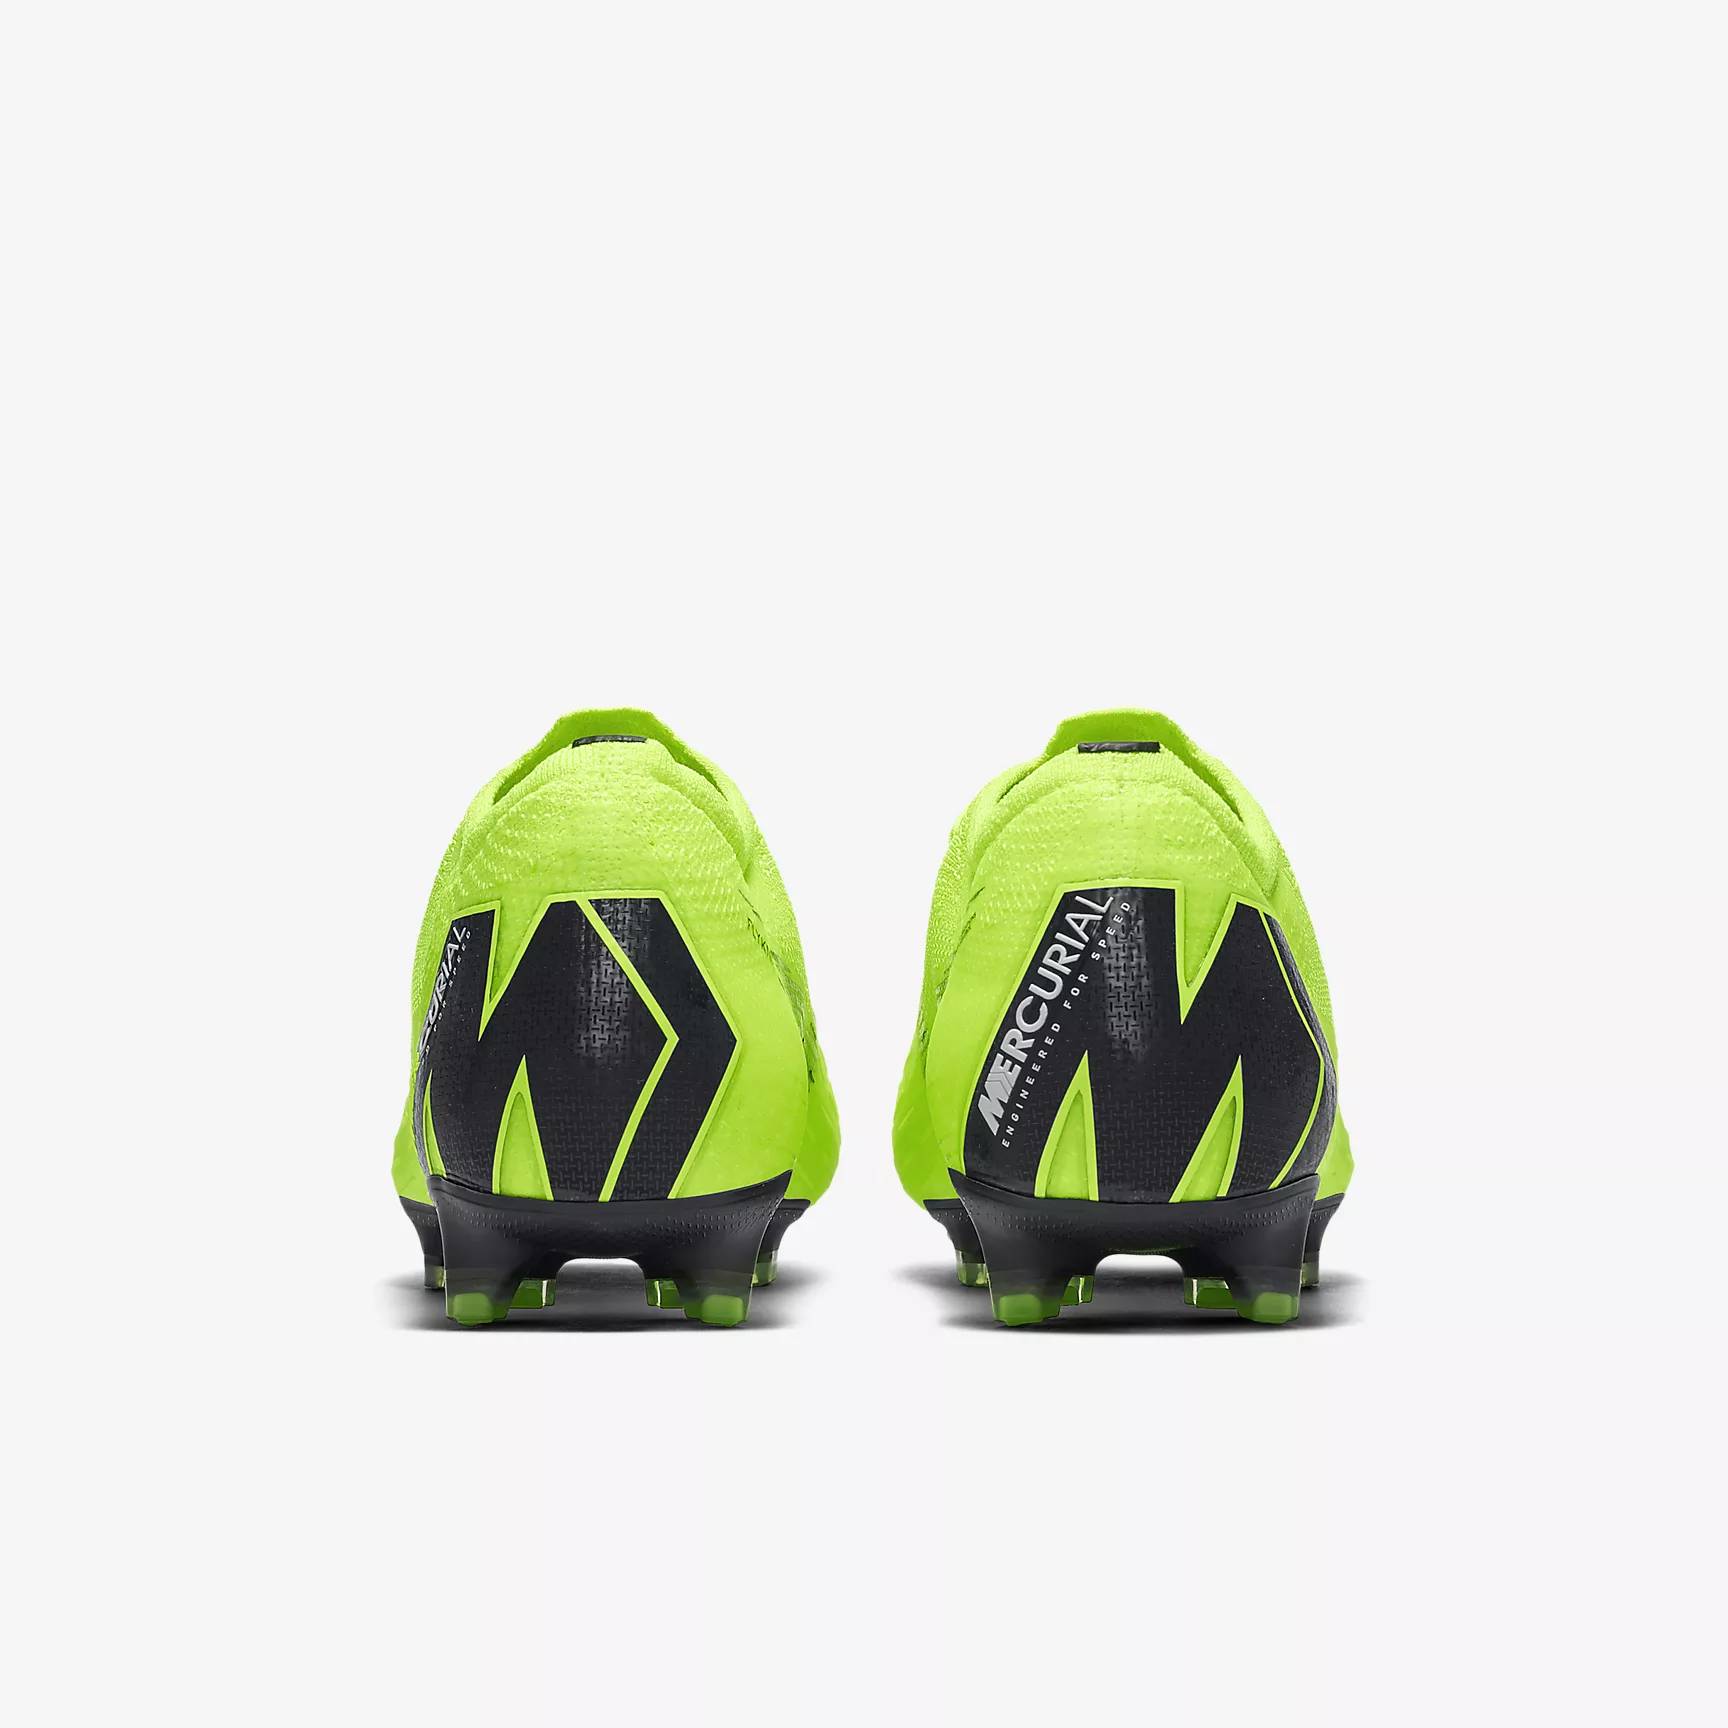 Nike Mercurial Vapor 5 Video Review Soccer Reviews For You